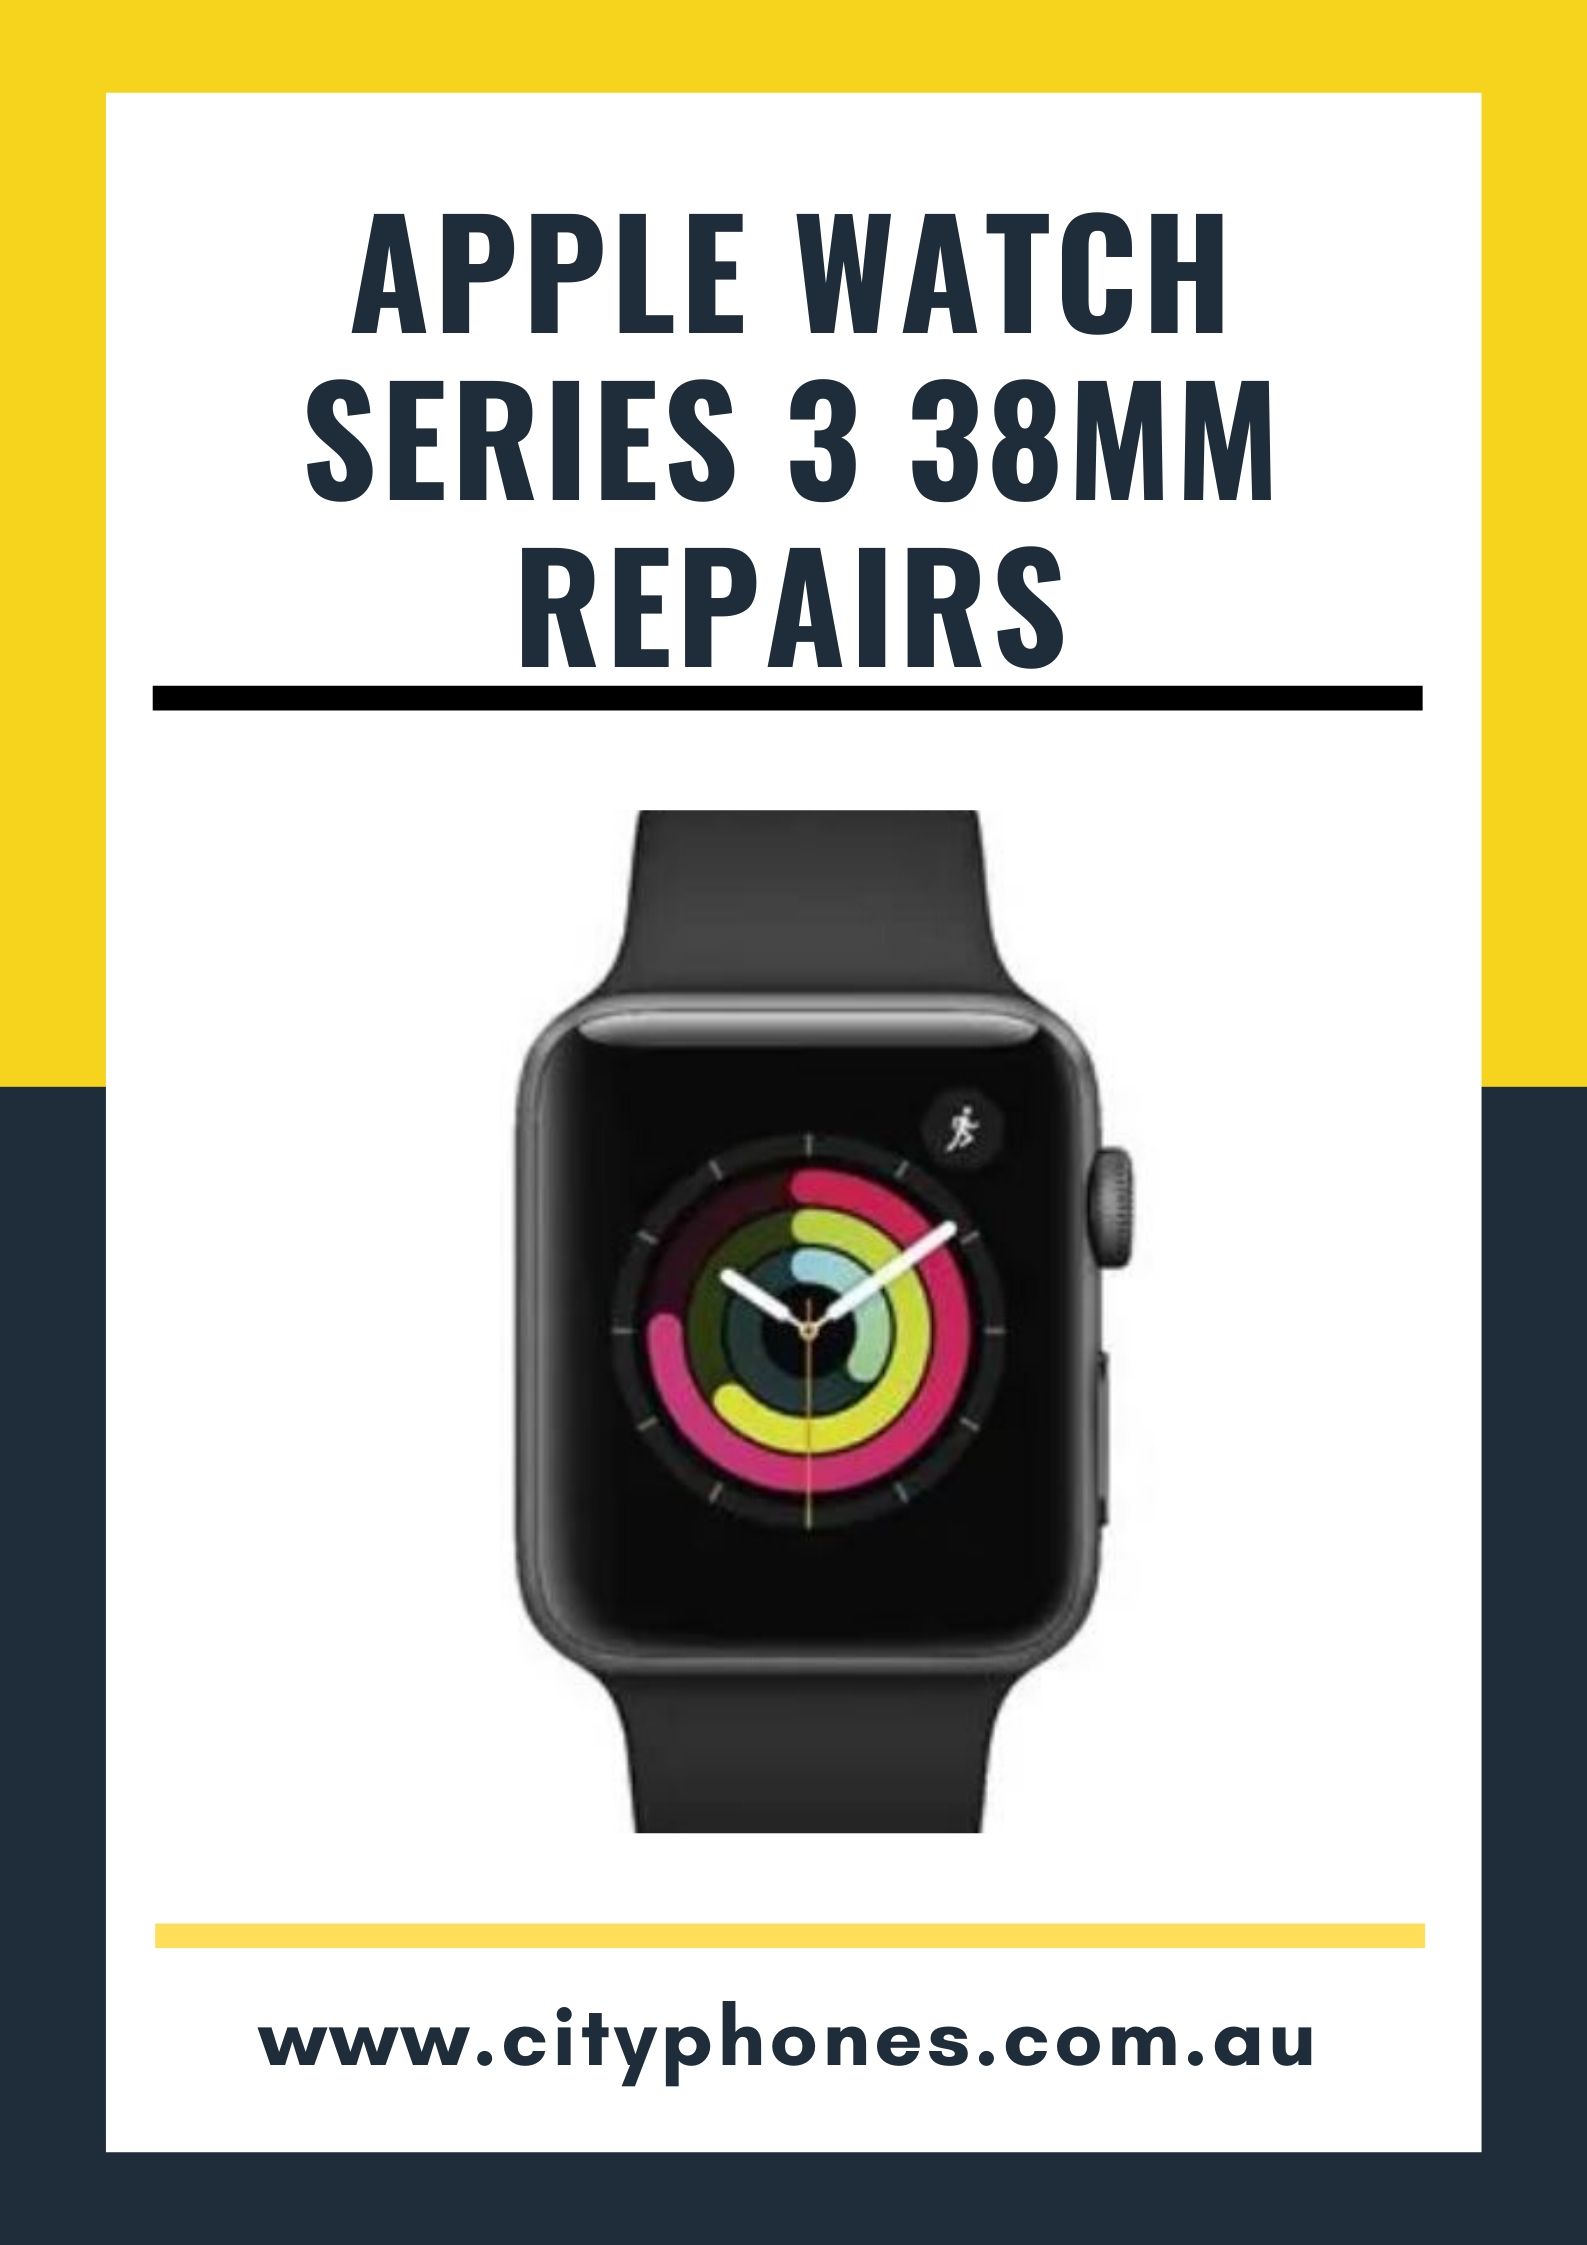 apple watch repair in melbourne